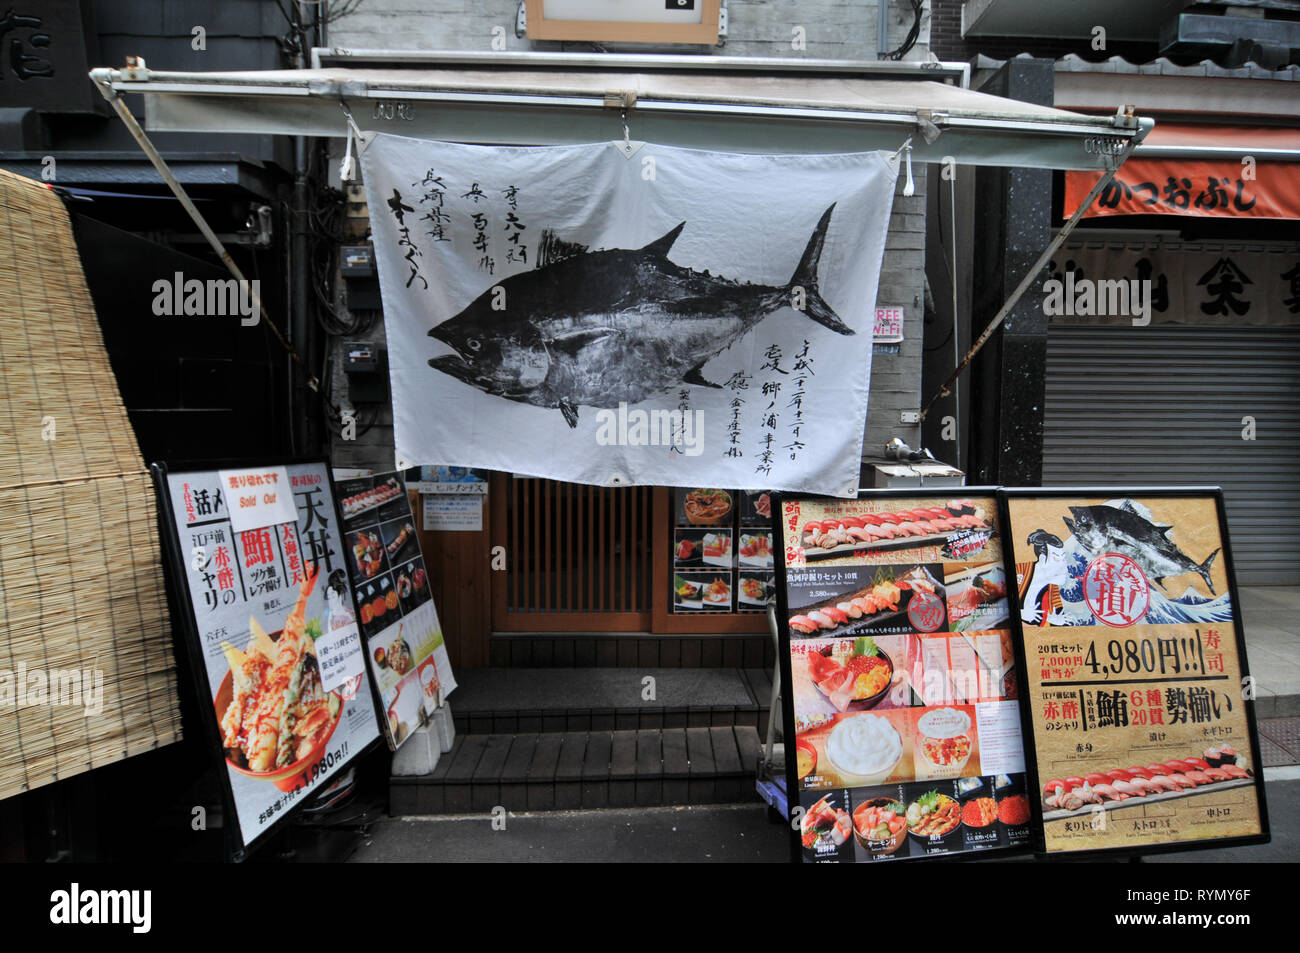 TOKYO, JAPON - 11 juillet 2018 : un typique japonais drape, avec un logo de thon, suspendu à l'entrée du porche d'un restaurant dans le célèbre marché aux poissons de Tsukiji M Banque D'Images